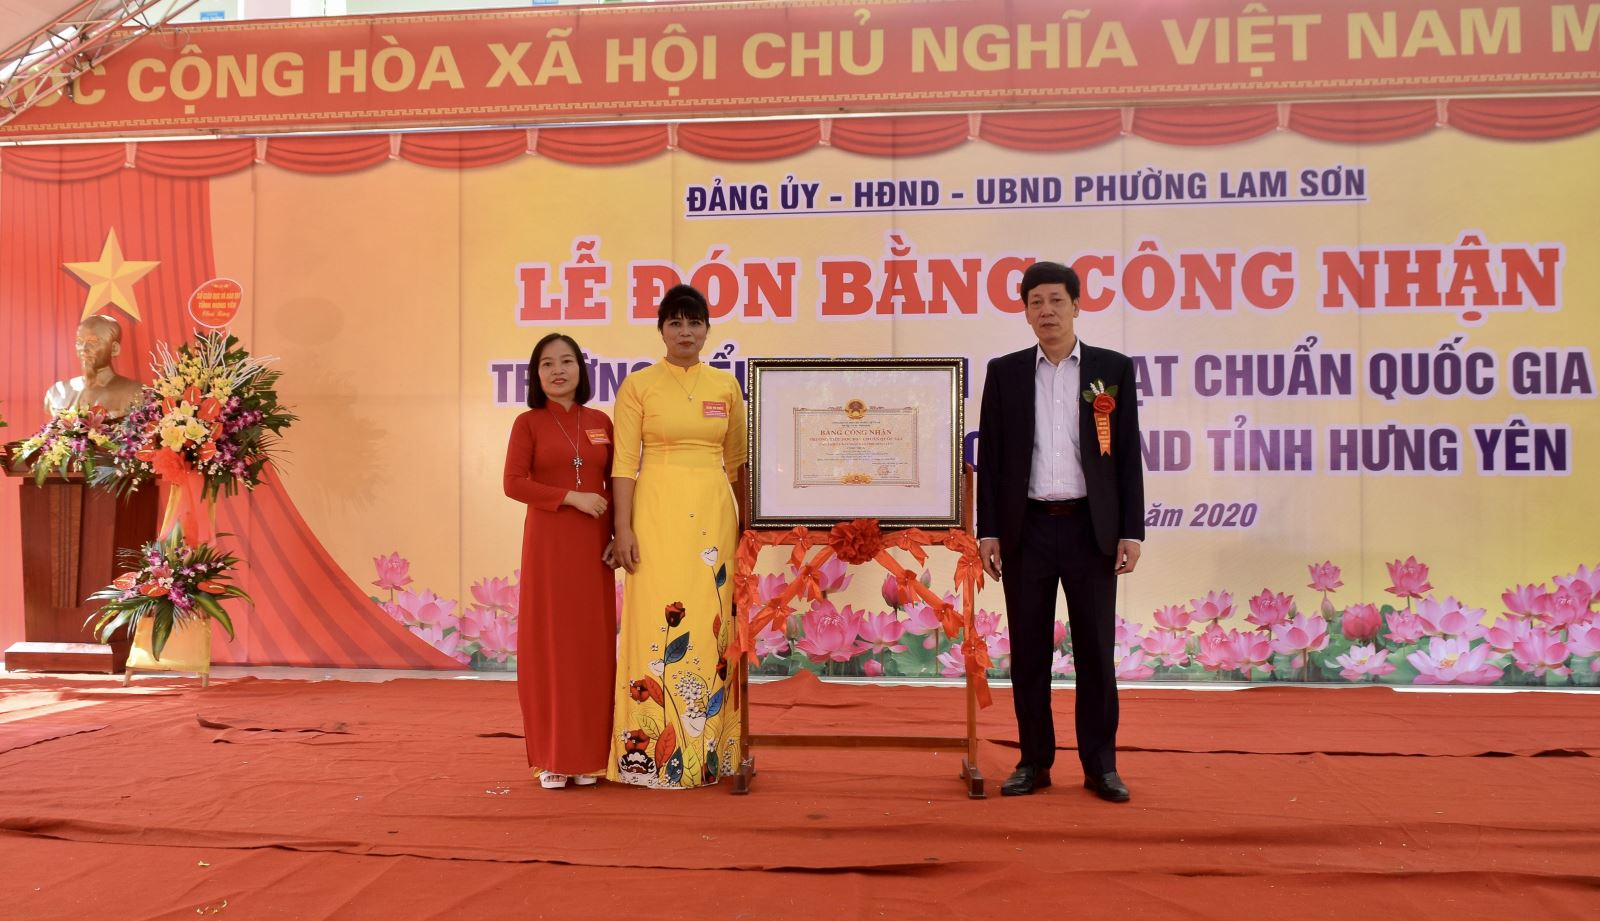 Phường Lam Sơn đón Bằng công nhận đạt chuẩn quốc gia mức độ I  và đón Cờ thi đua của UBND tỉnh Hưng Yên 